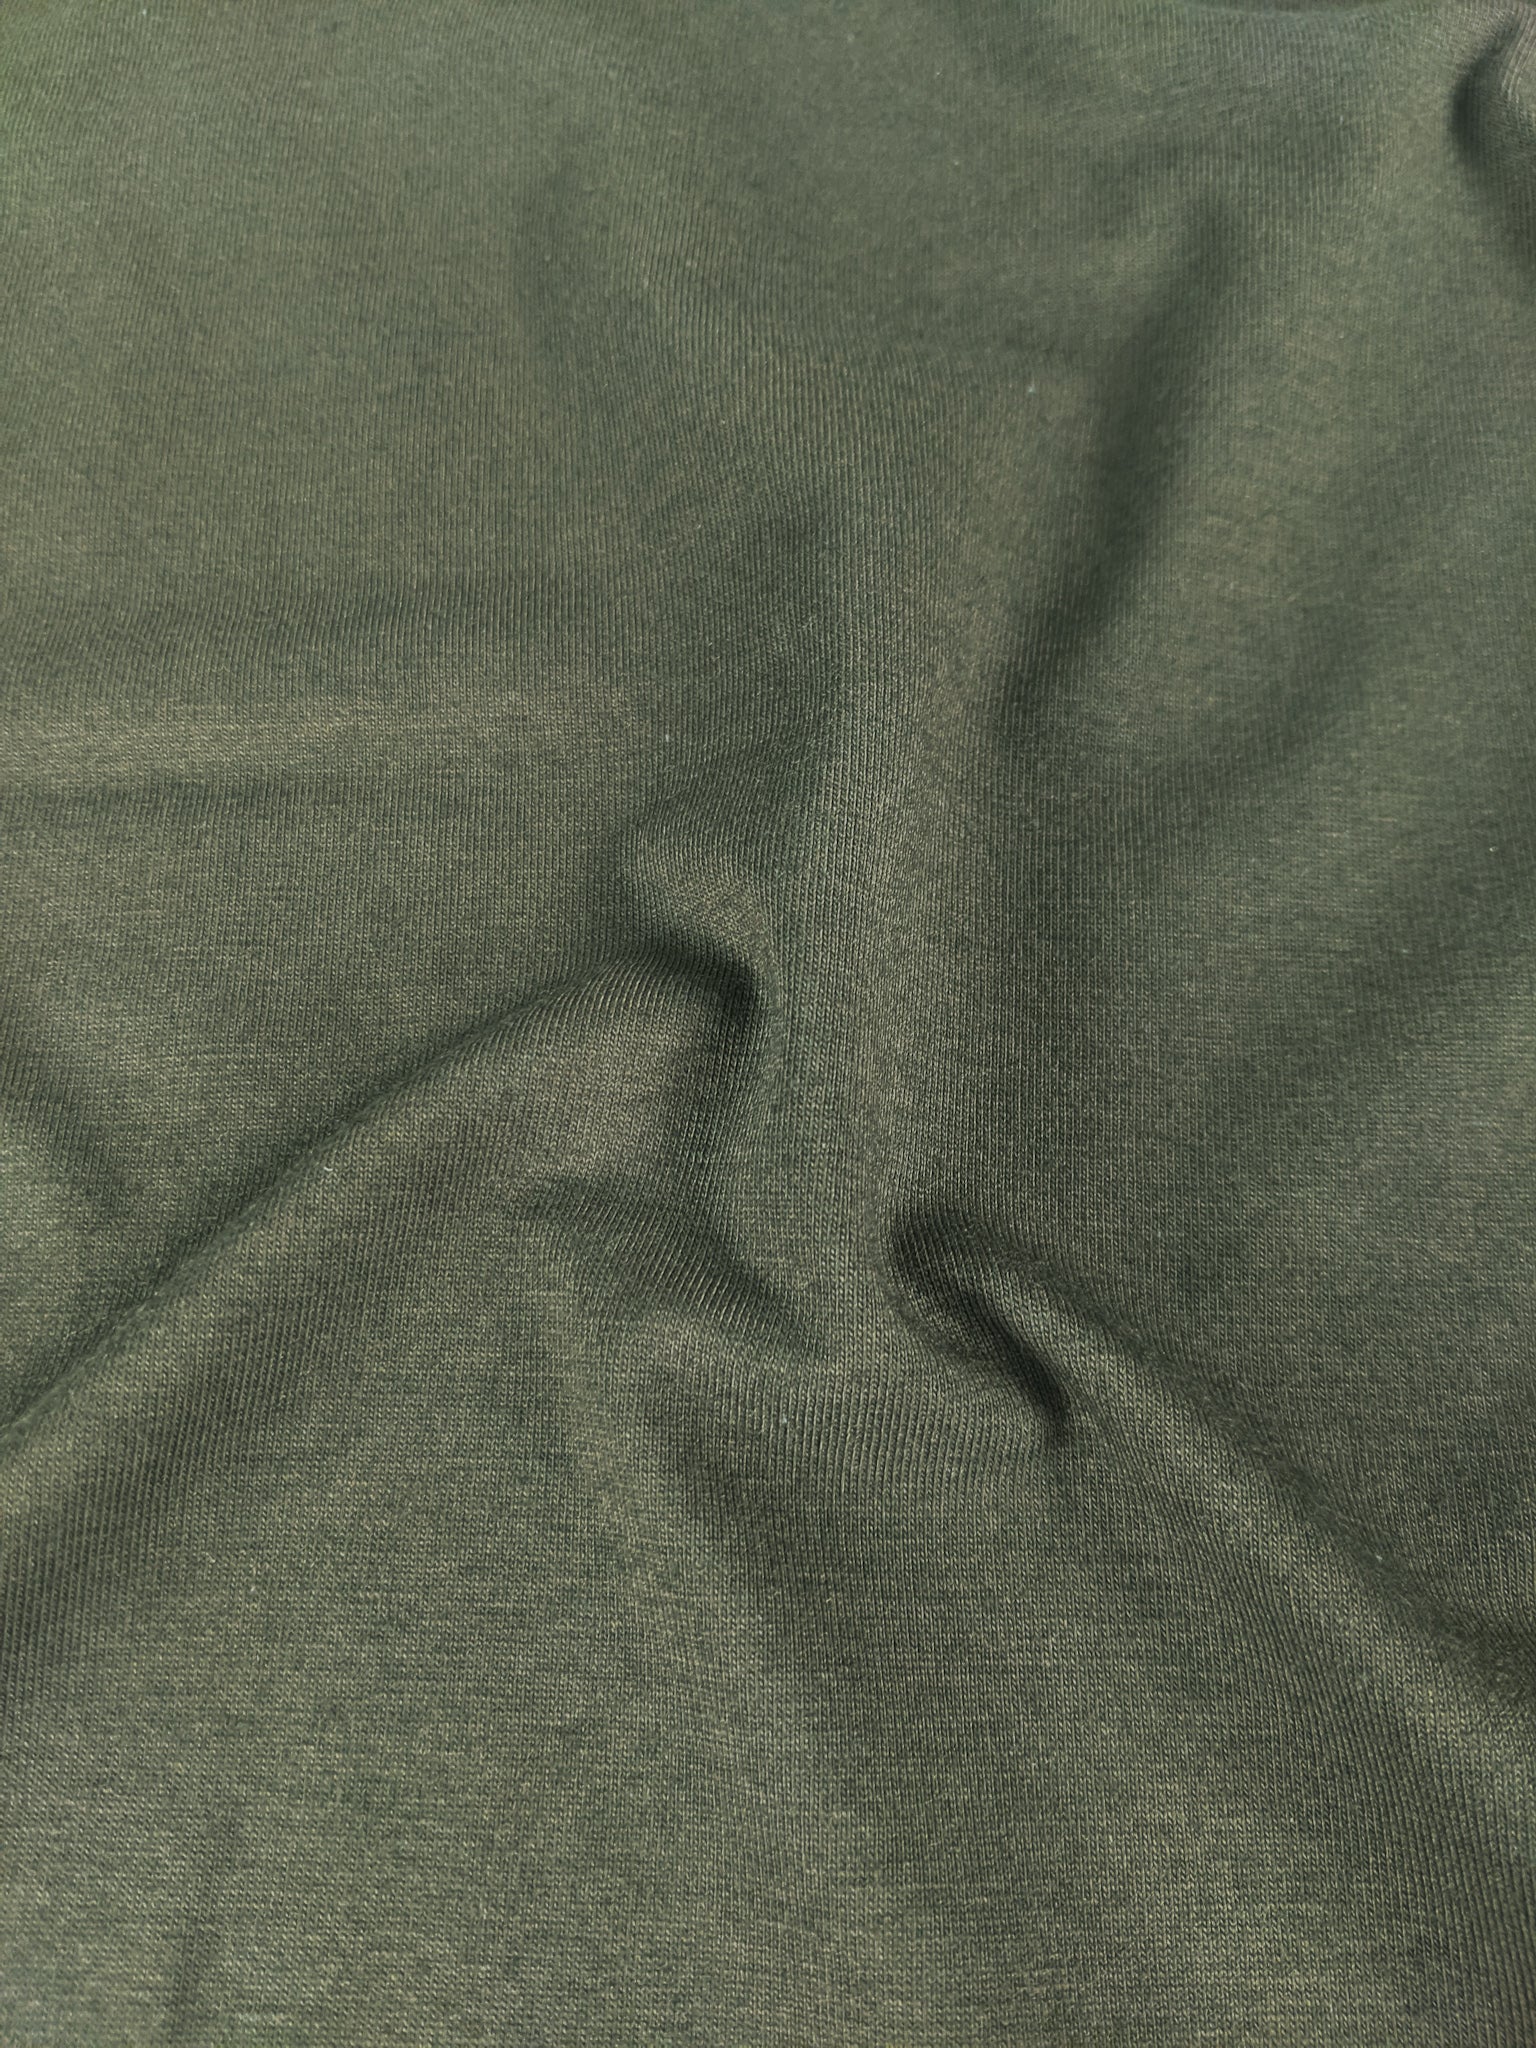 Cotton Modal Jersey Knit, Pine – Sitka Fabrics